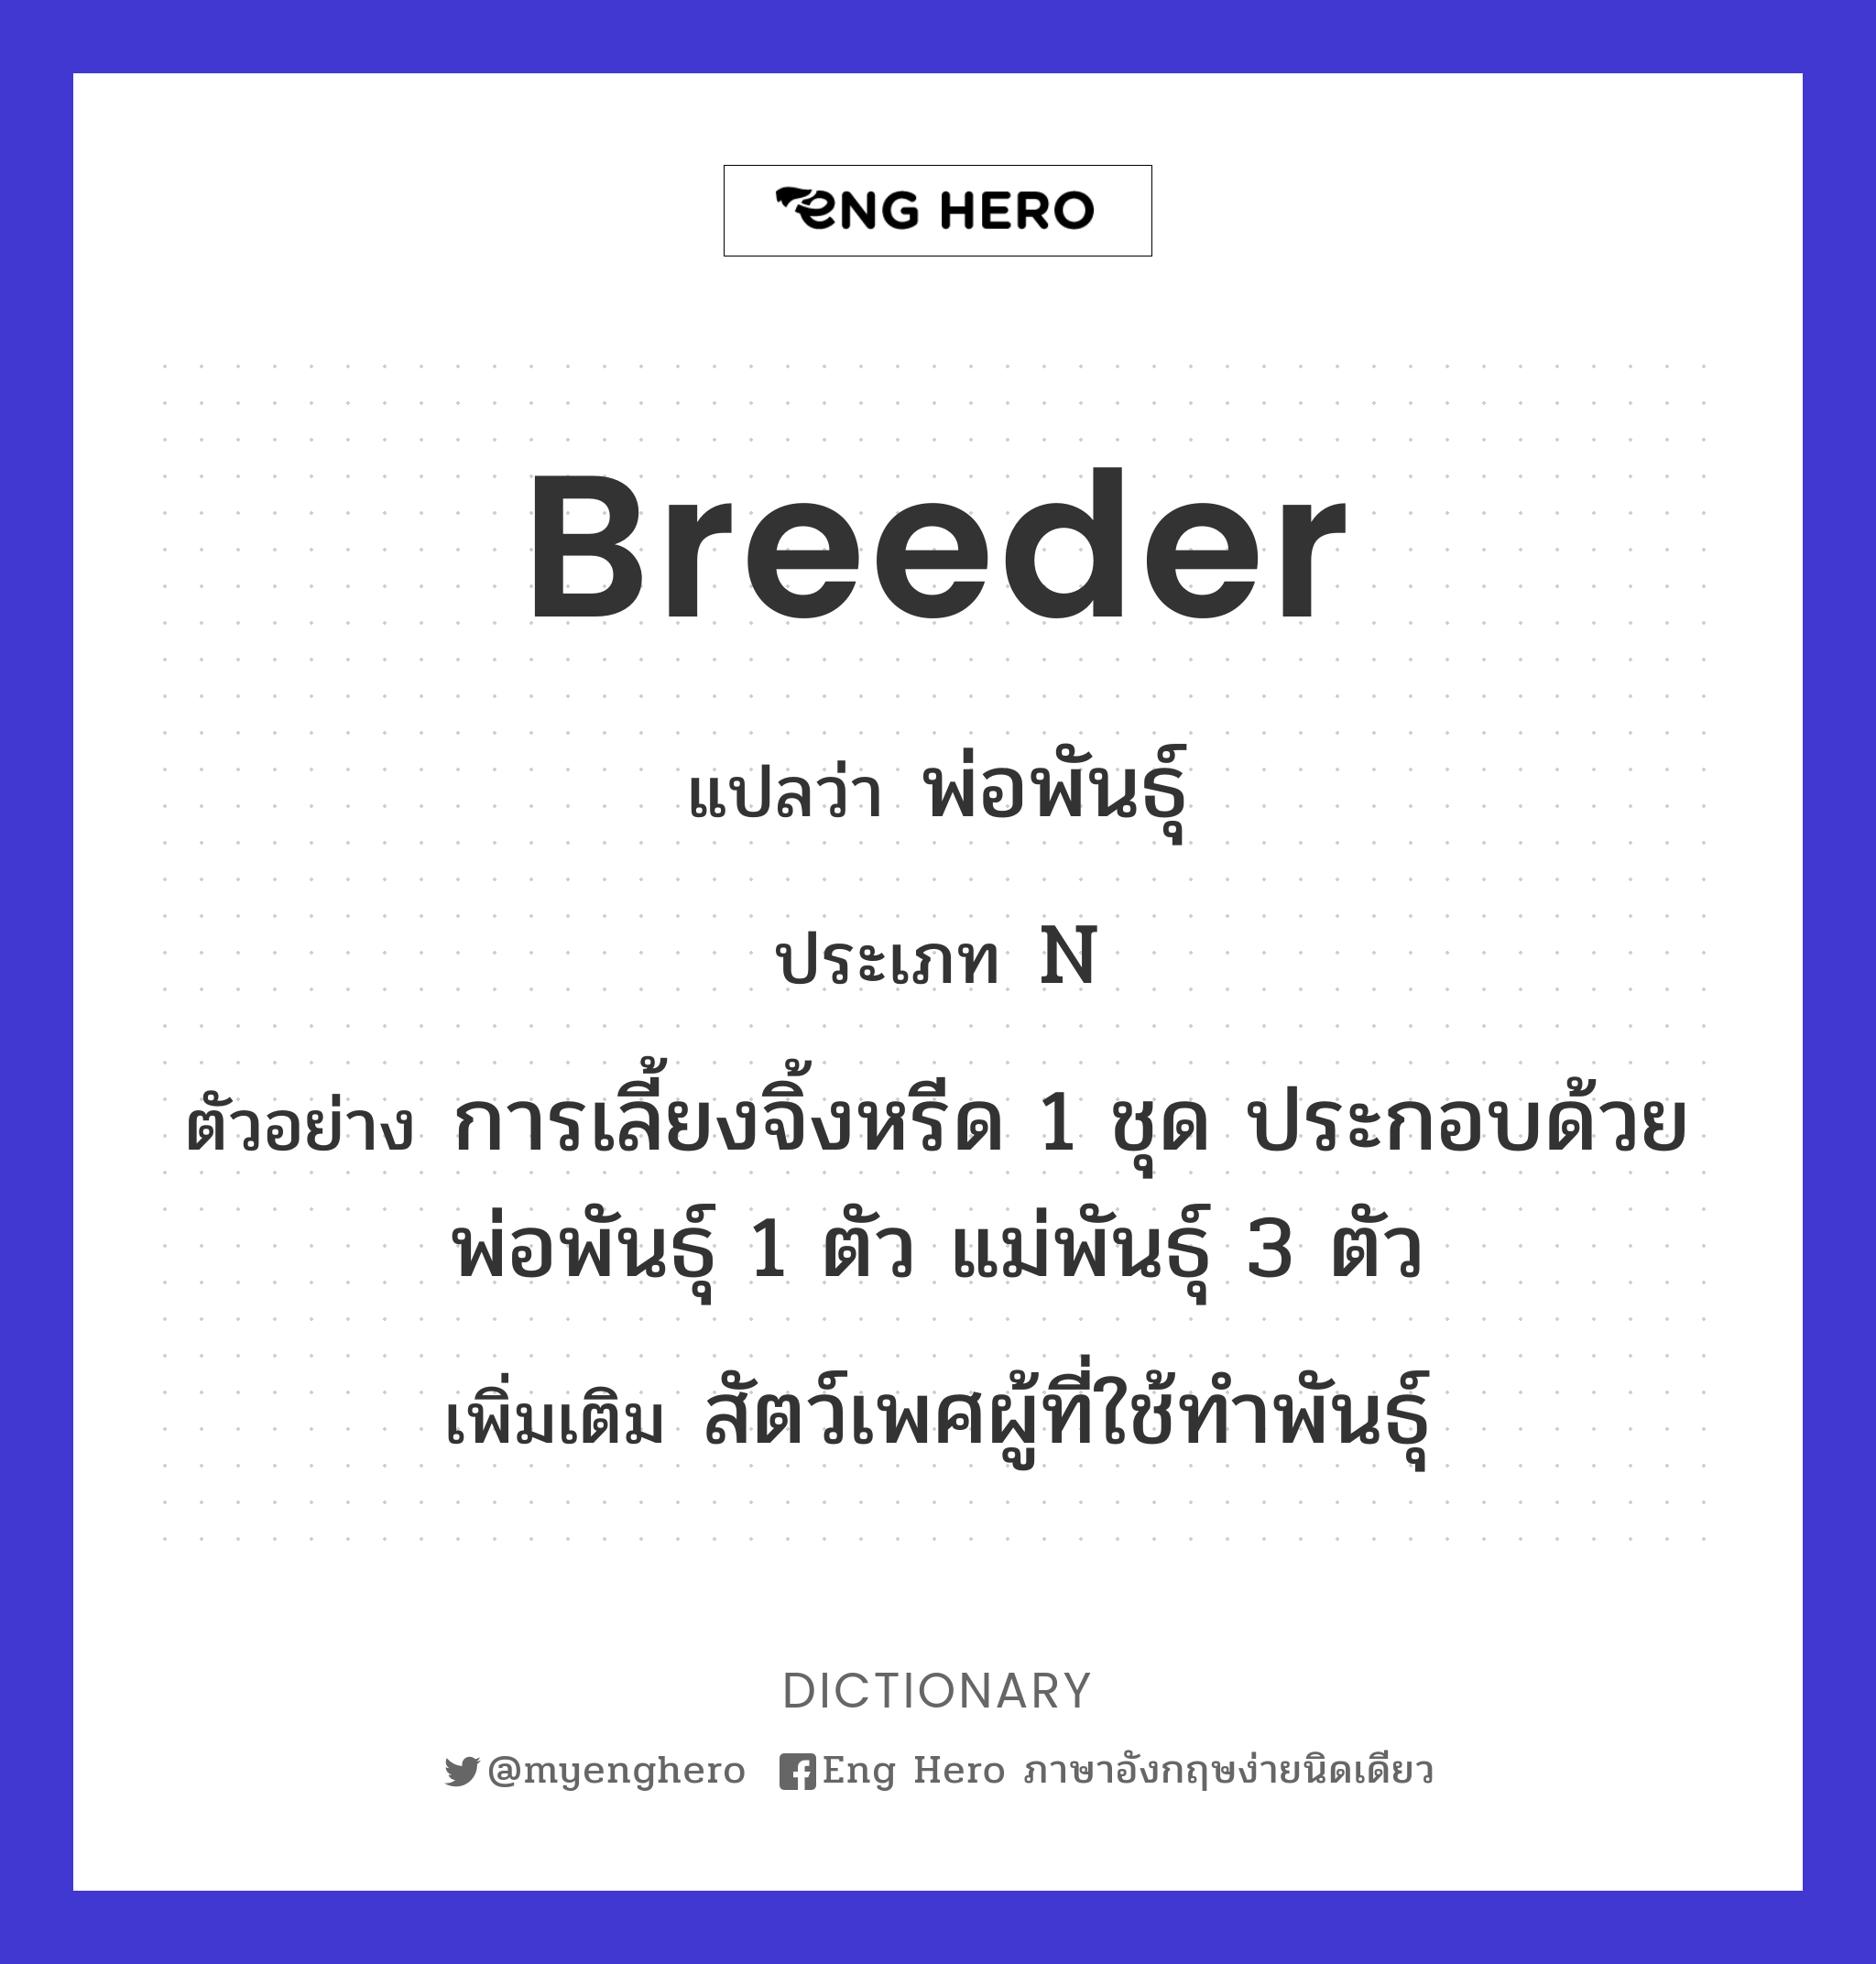 breeder